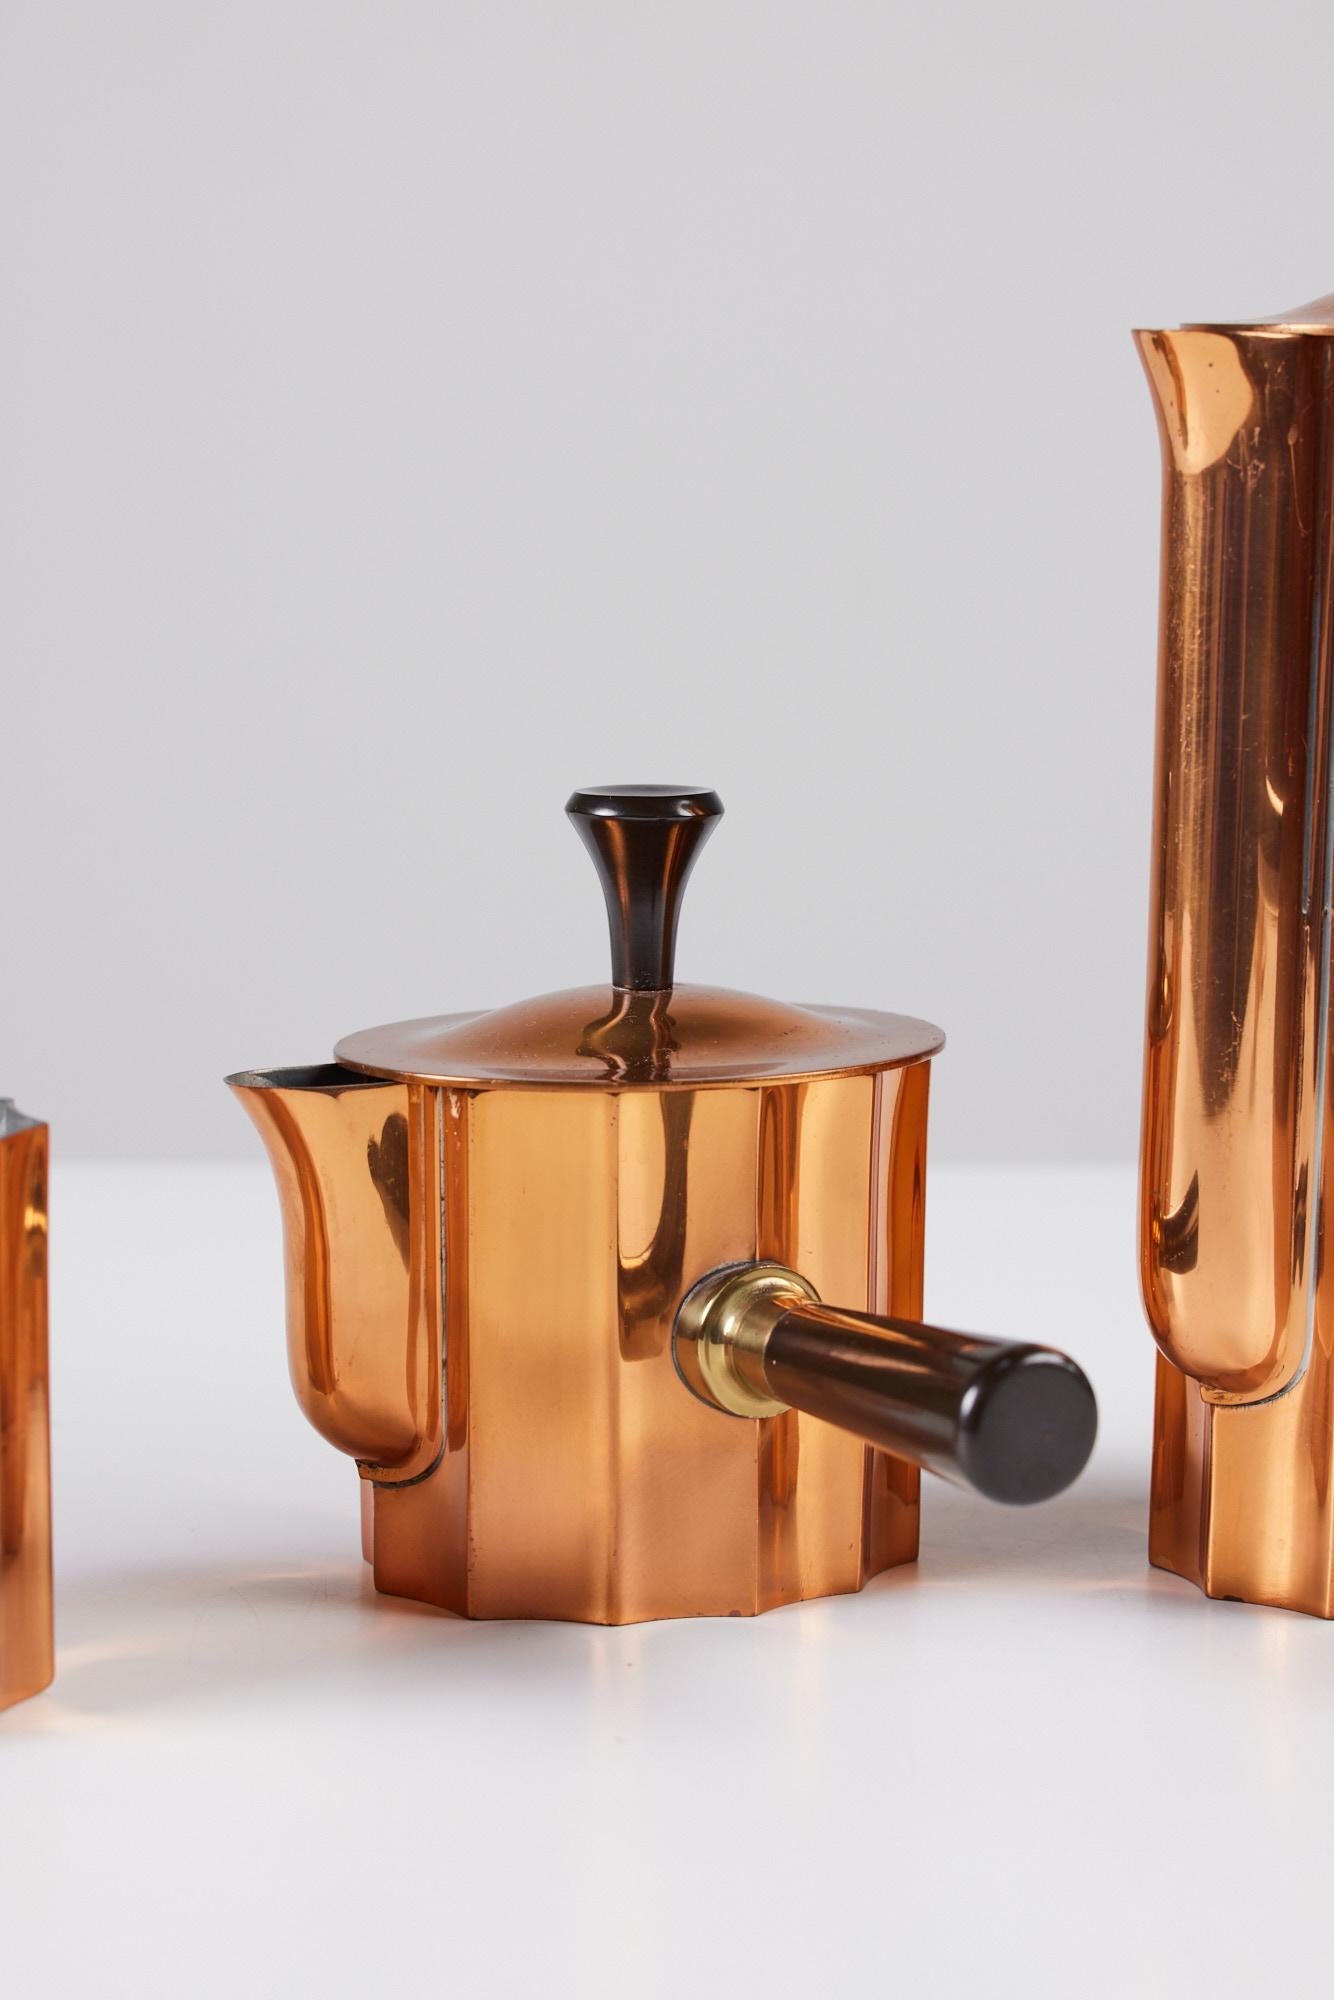 Copper Three-Piece Tea Set by Walter Von Nessen for Chase